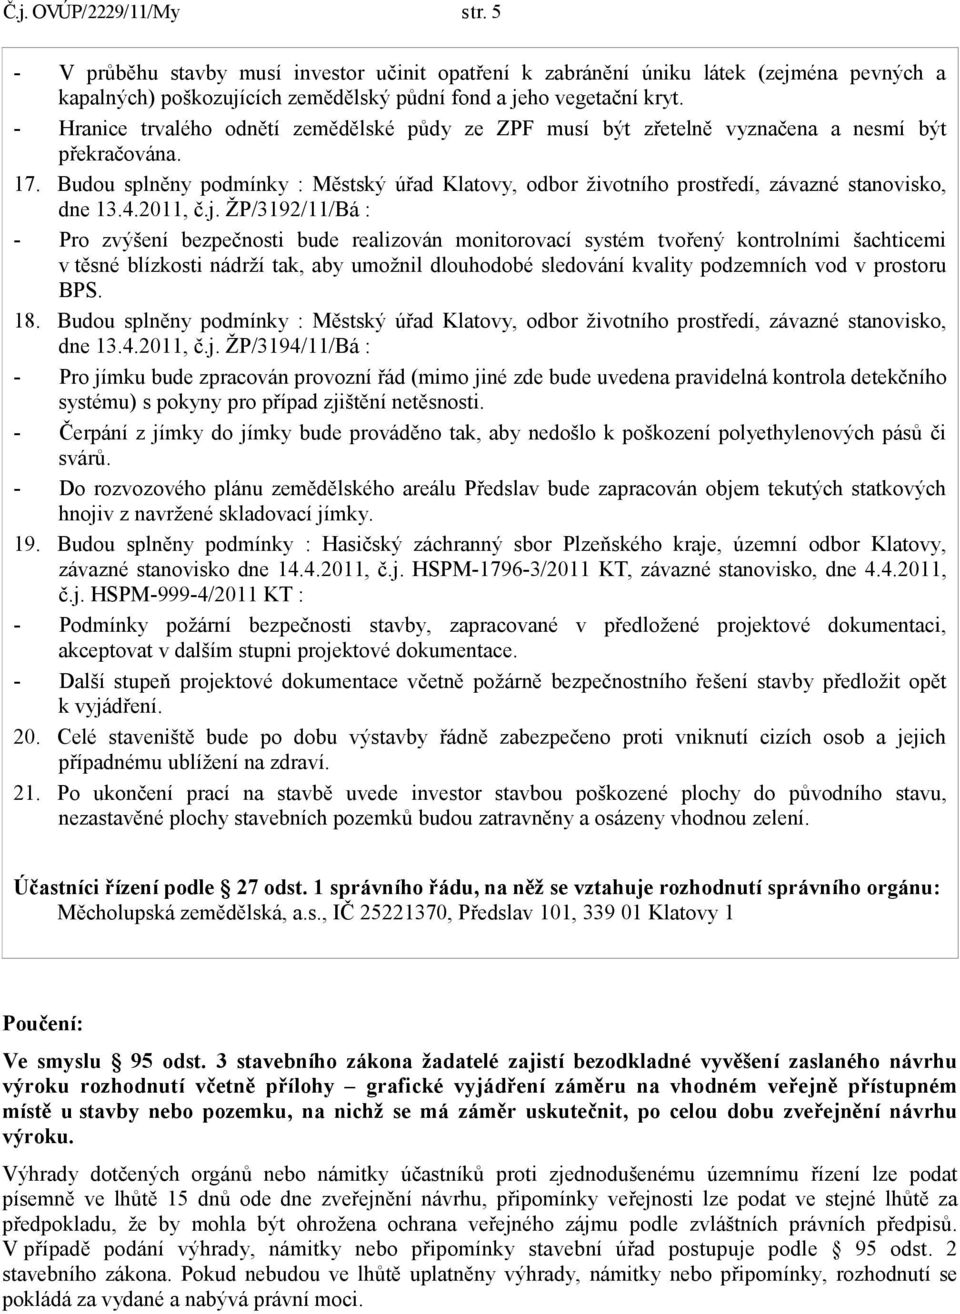 Budou splněny podmínky : Městský úřad Klatovy, odbor životního prostředí, závazné stanovisko, dne 13.4.2011, č.j.